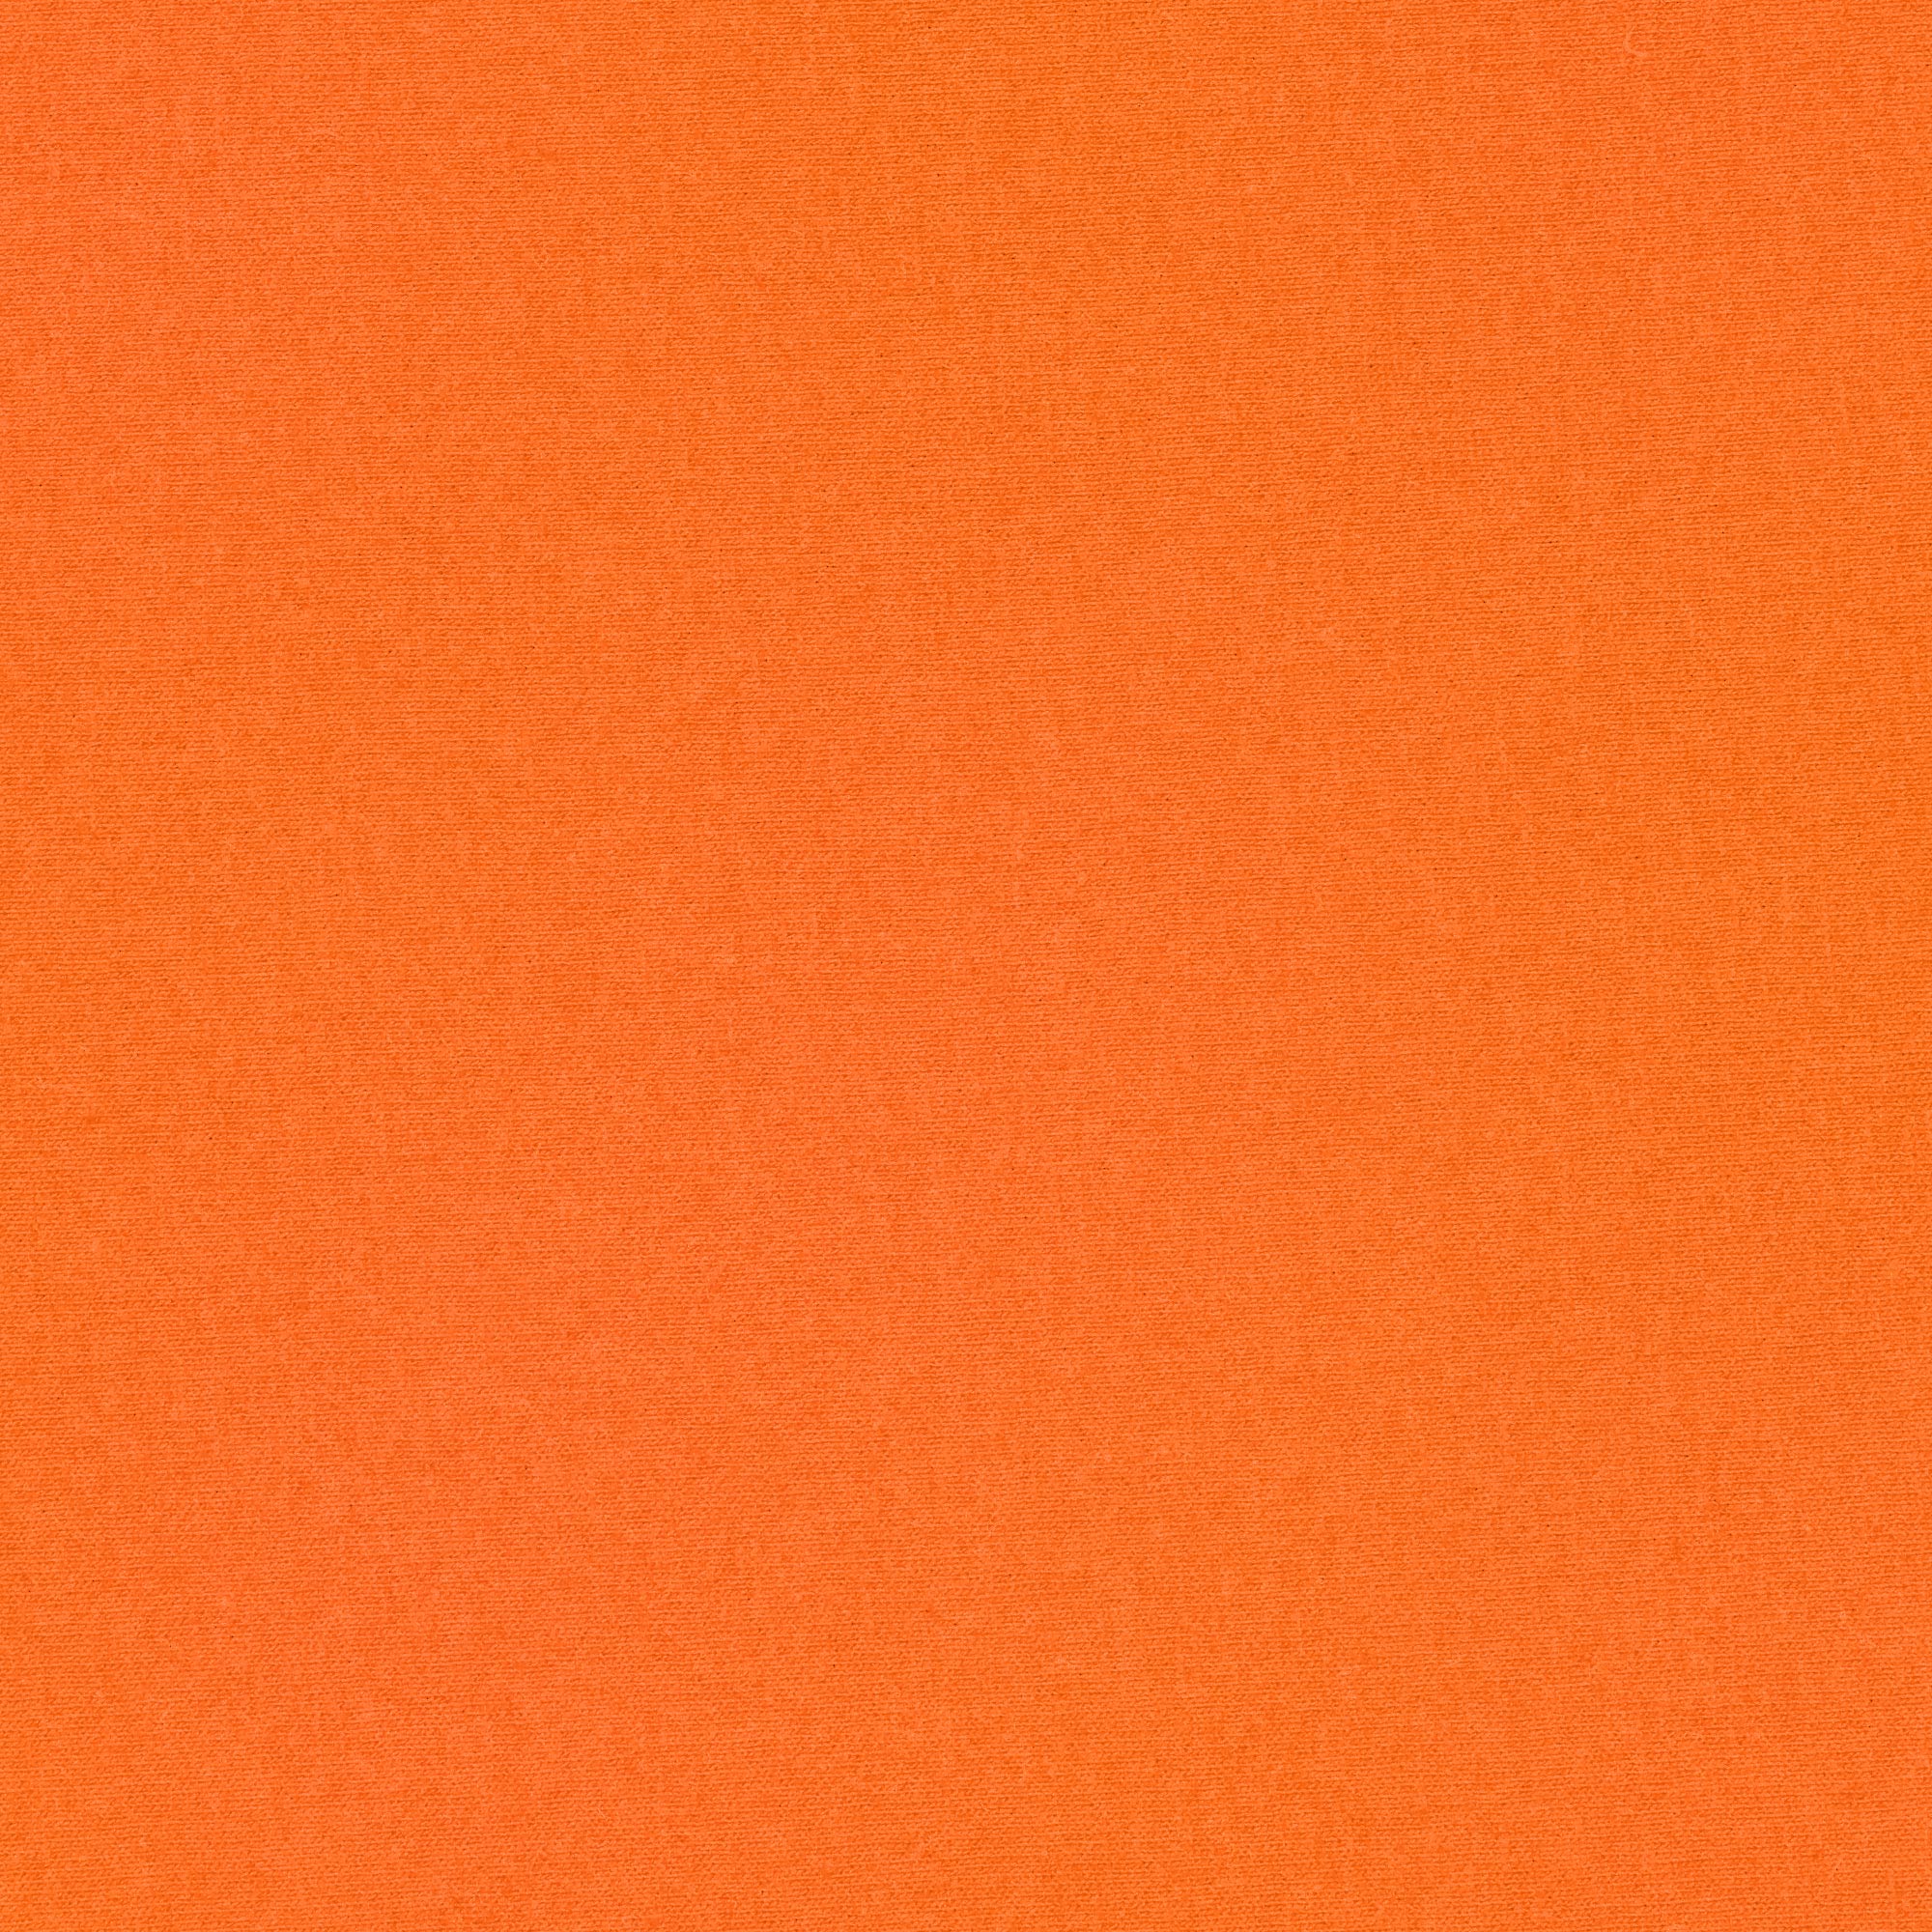 фото Футболка женская amadey classic оранжевая 44-46 m